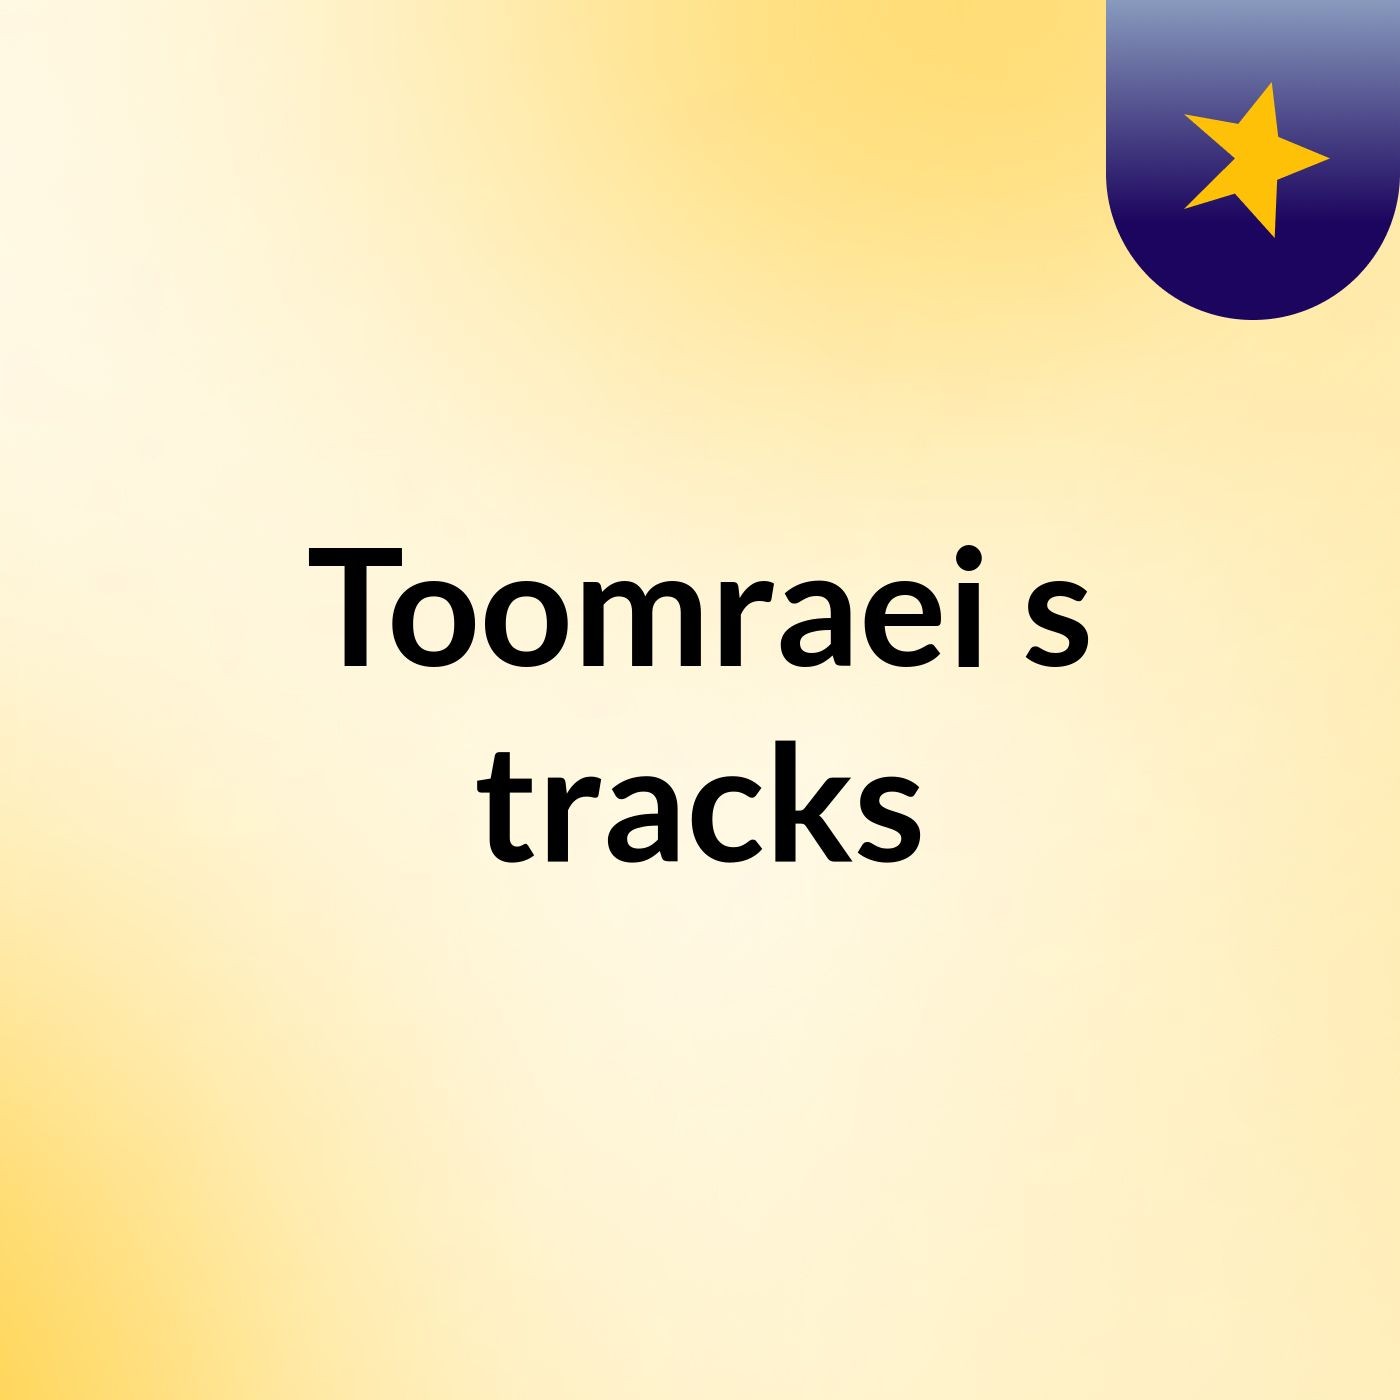 Toomraei's tracks